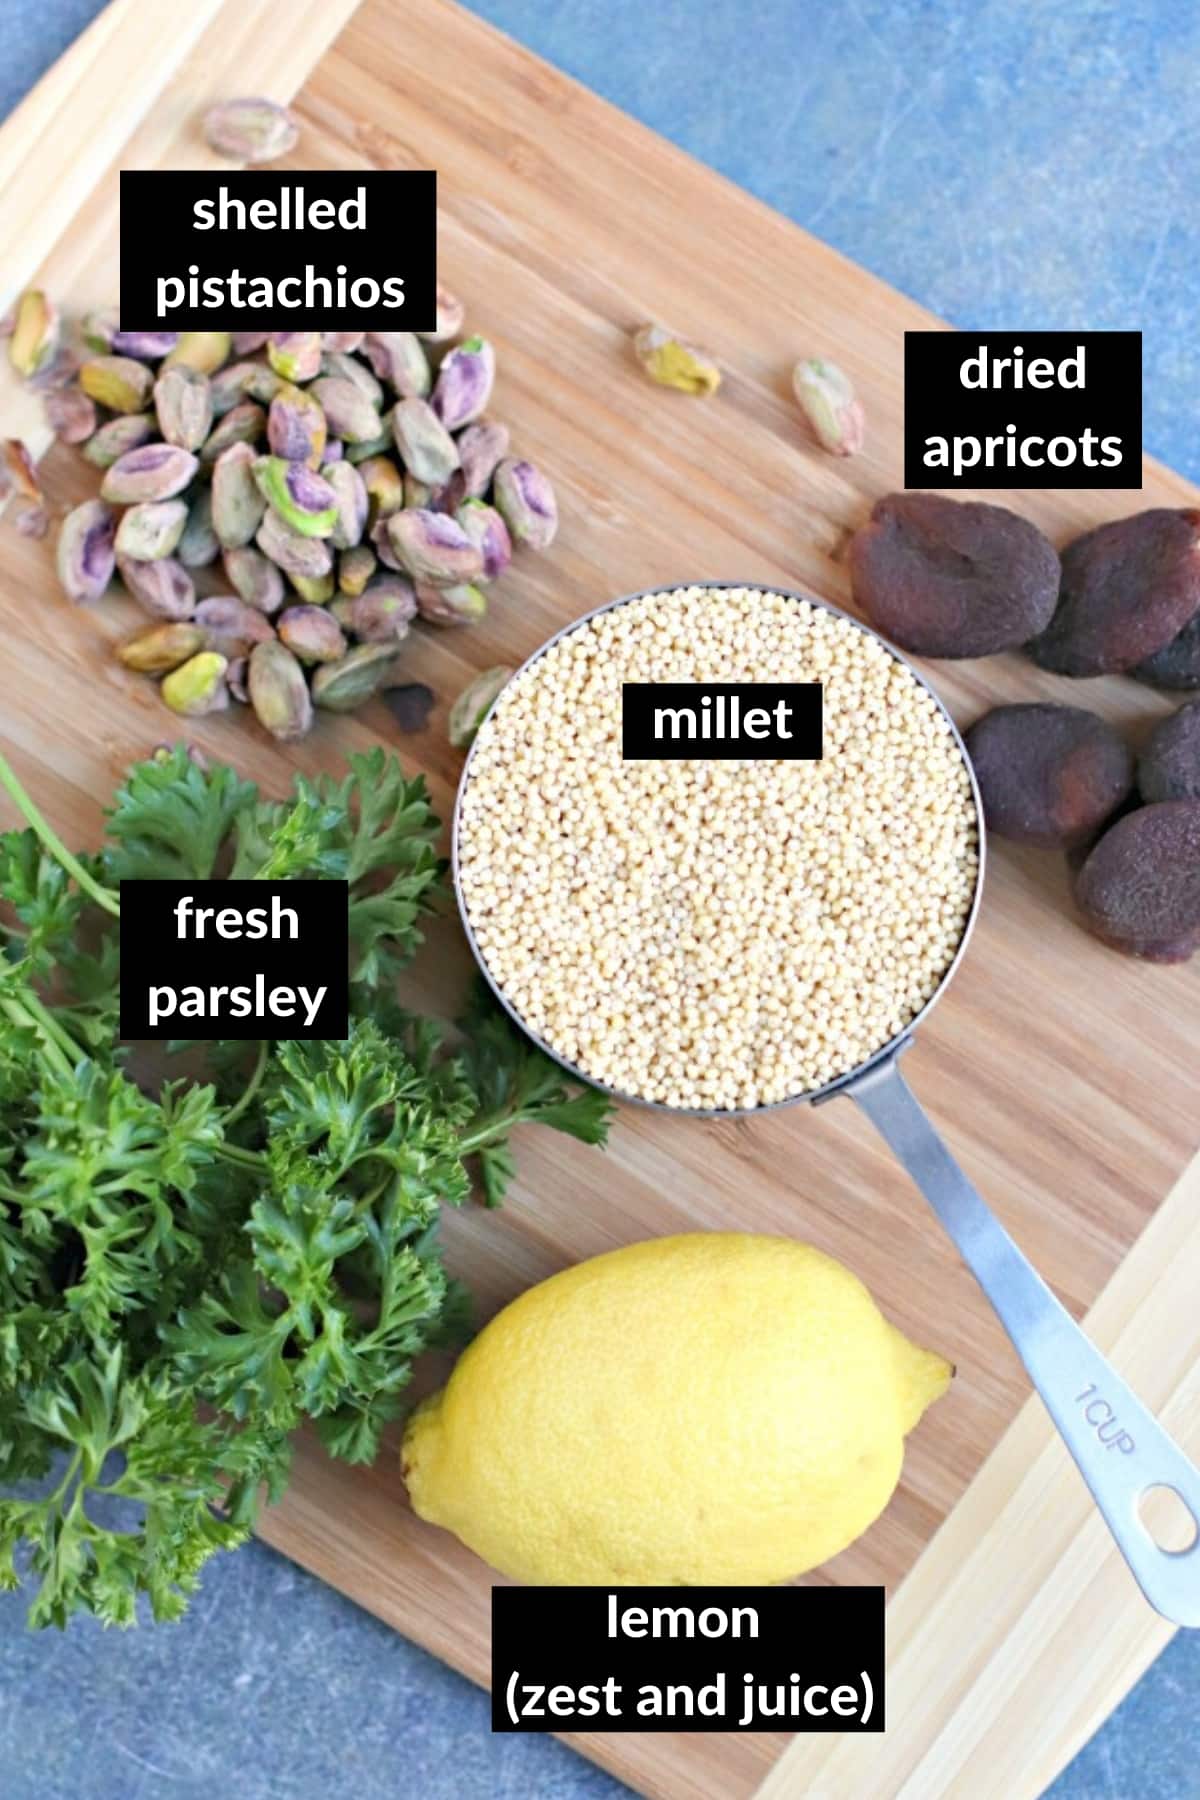 Ingredientes necesarios para hacer esta receta de mijo en una tabla de cortar de madera